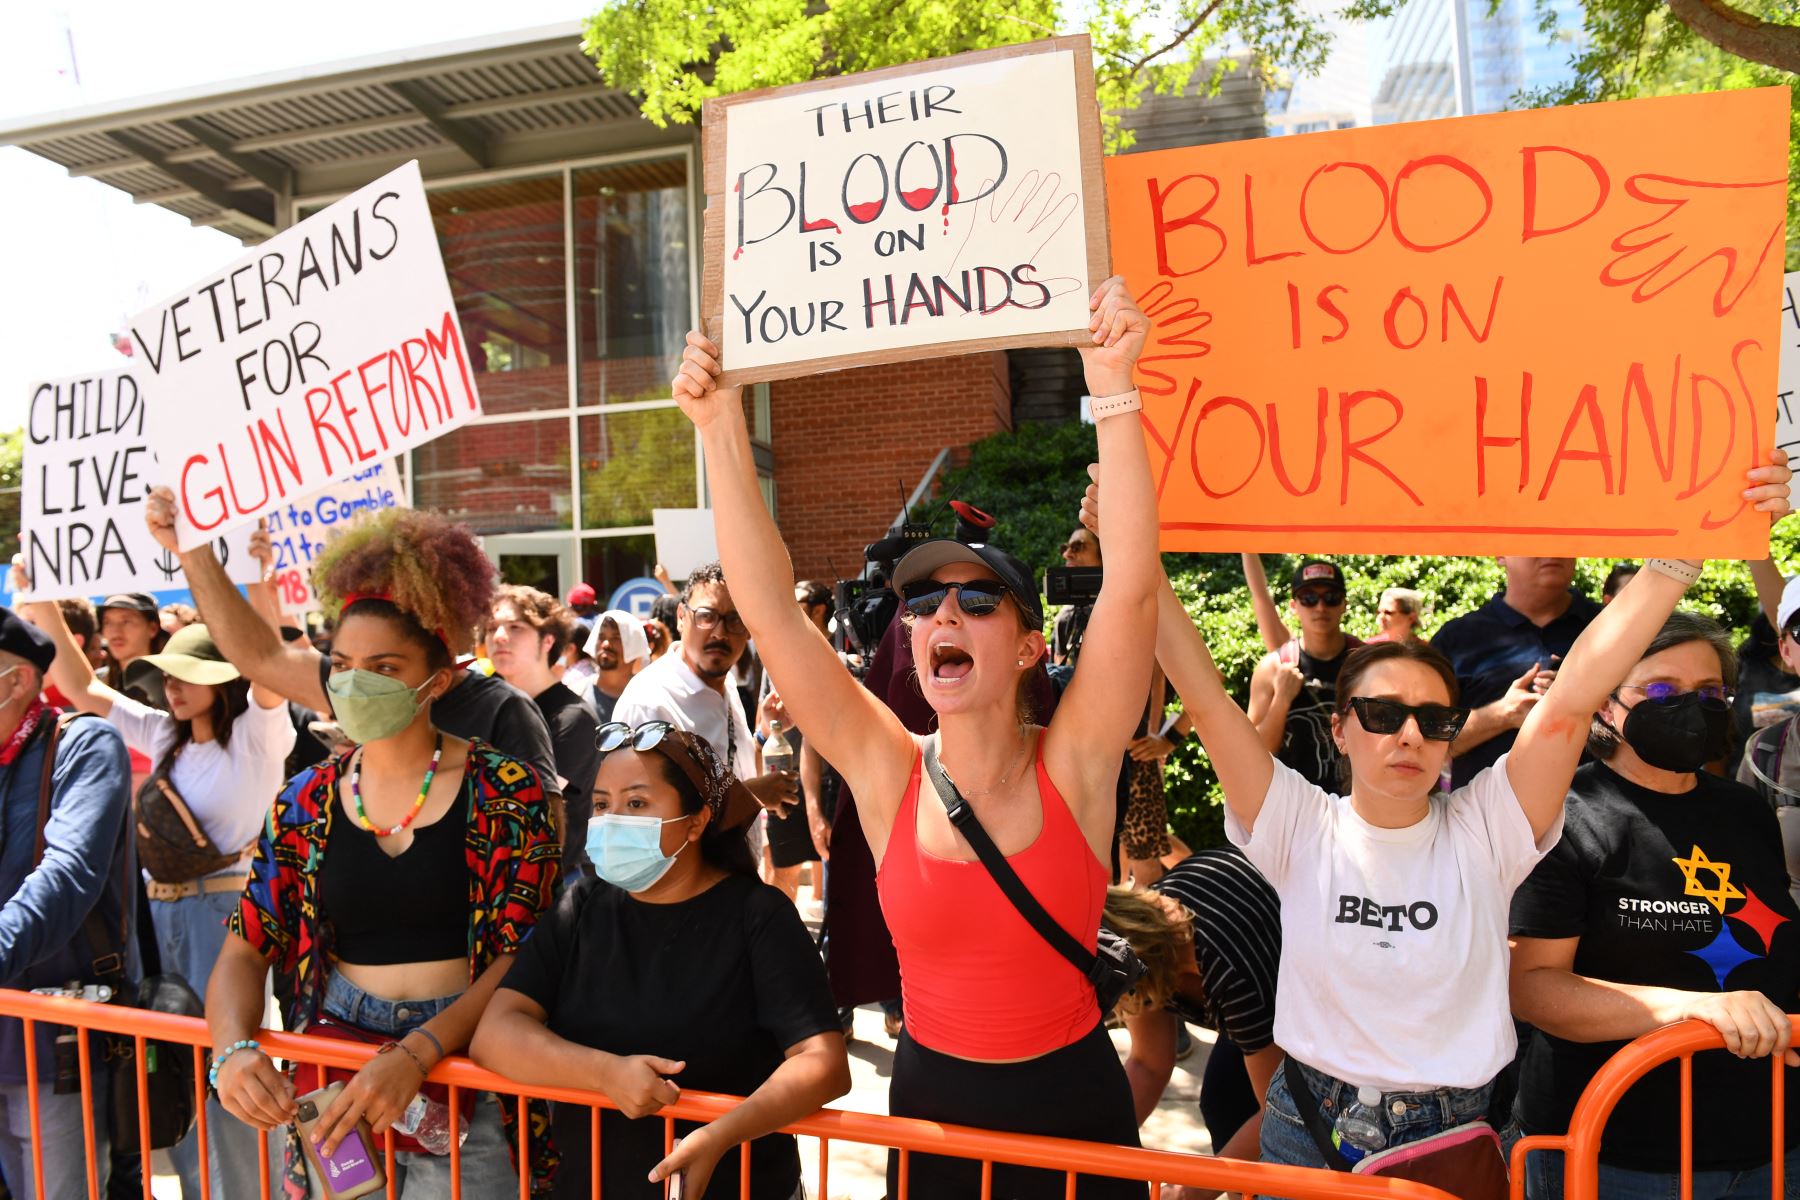 Los manifestantes en apoyo del control de armas sostienen carteles afuera de la Reunión Anual de la Asociación Nacional del Rifle en el Centro de Convenciones George R. Brown, el 27 de mayo de 2022, en Houston, Texas.
Foto: AFP